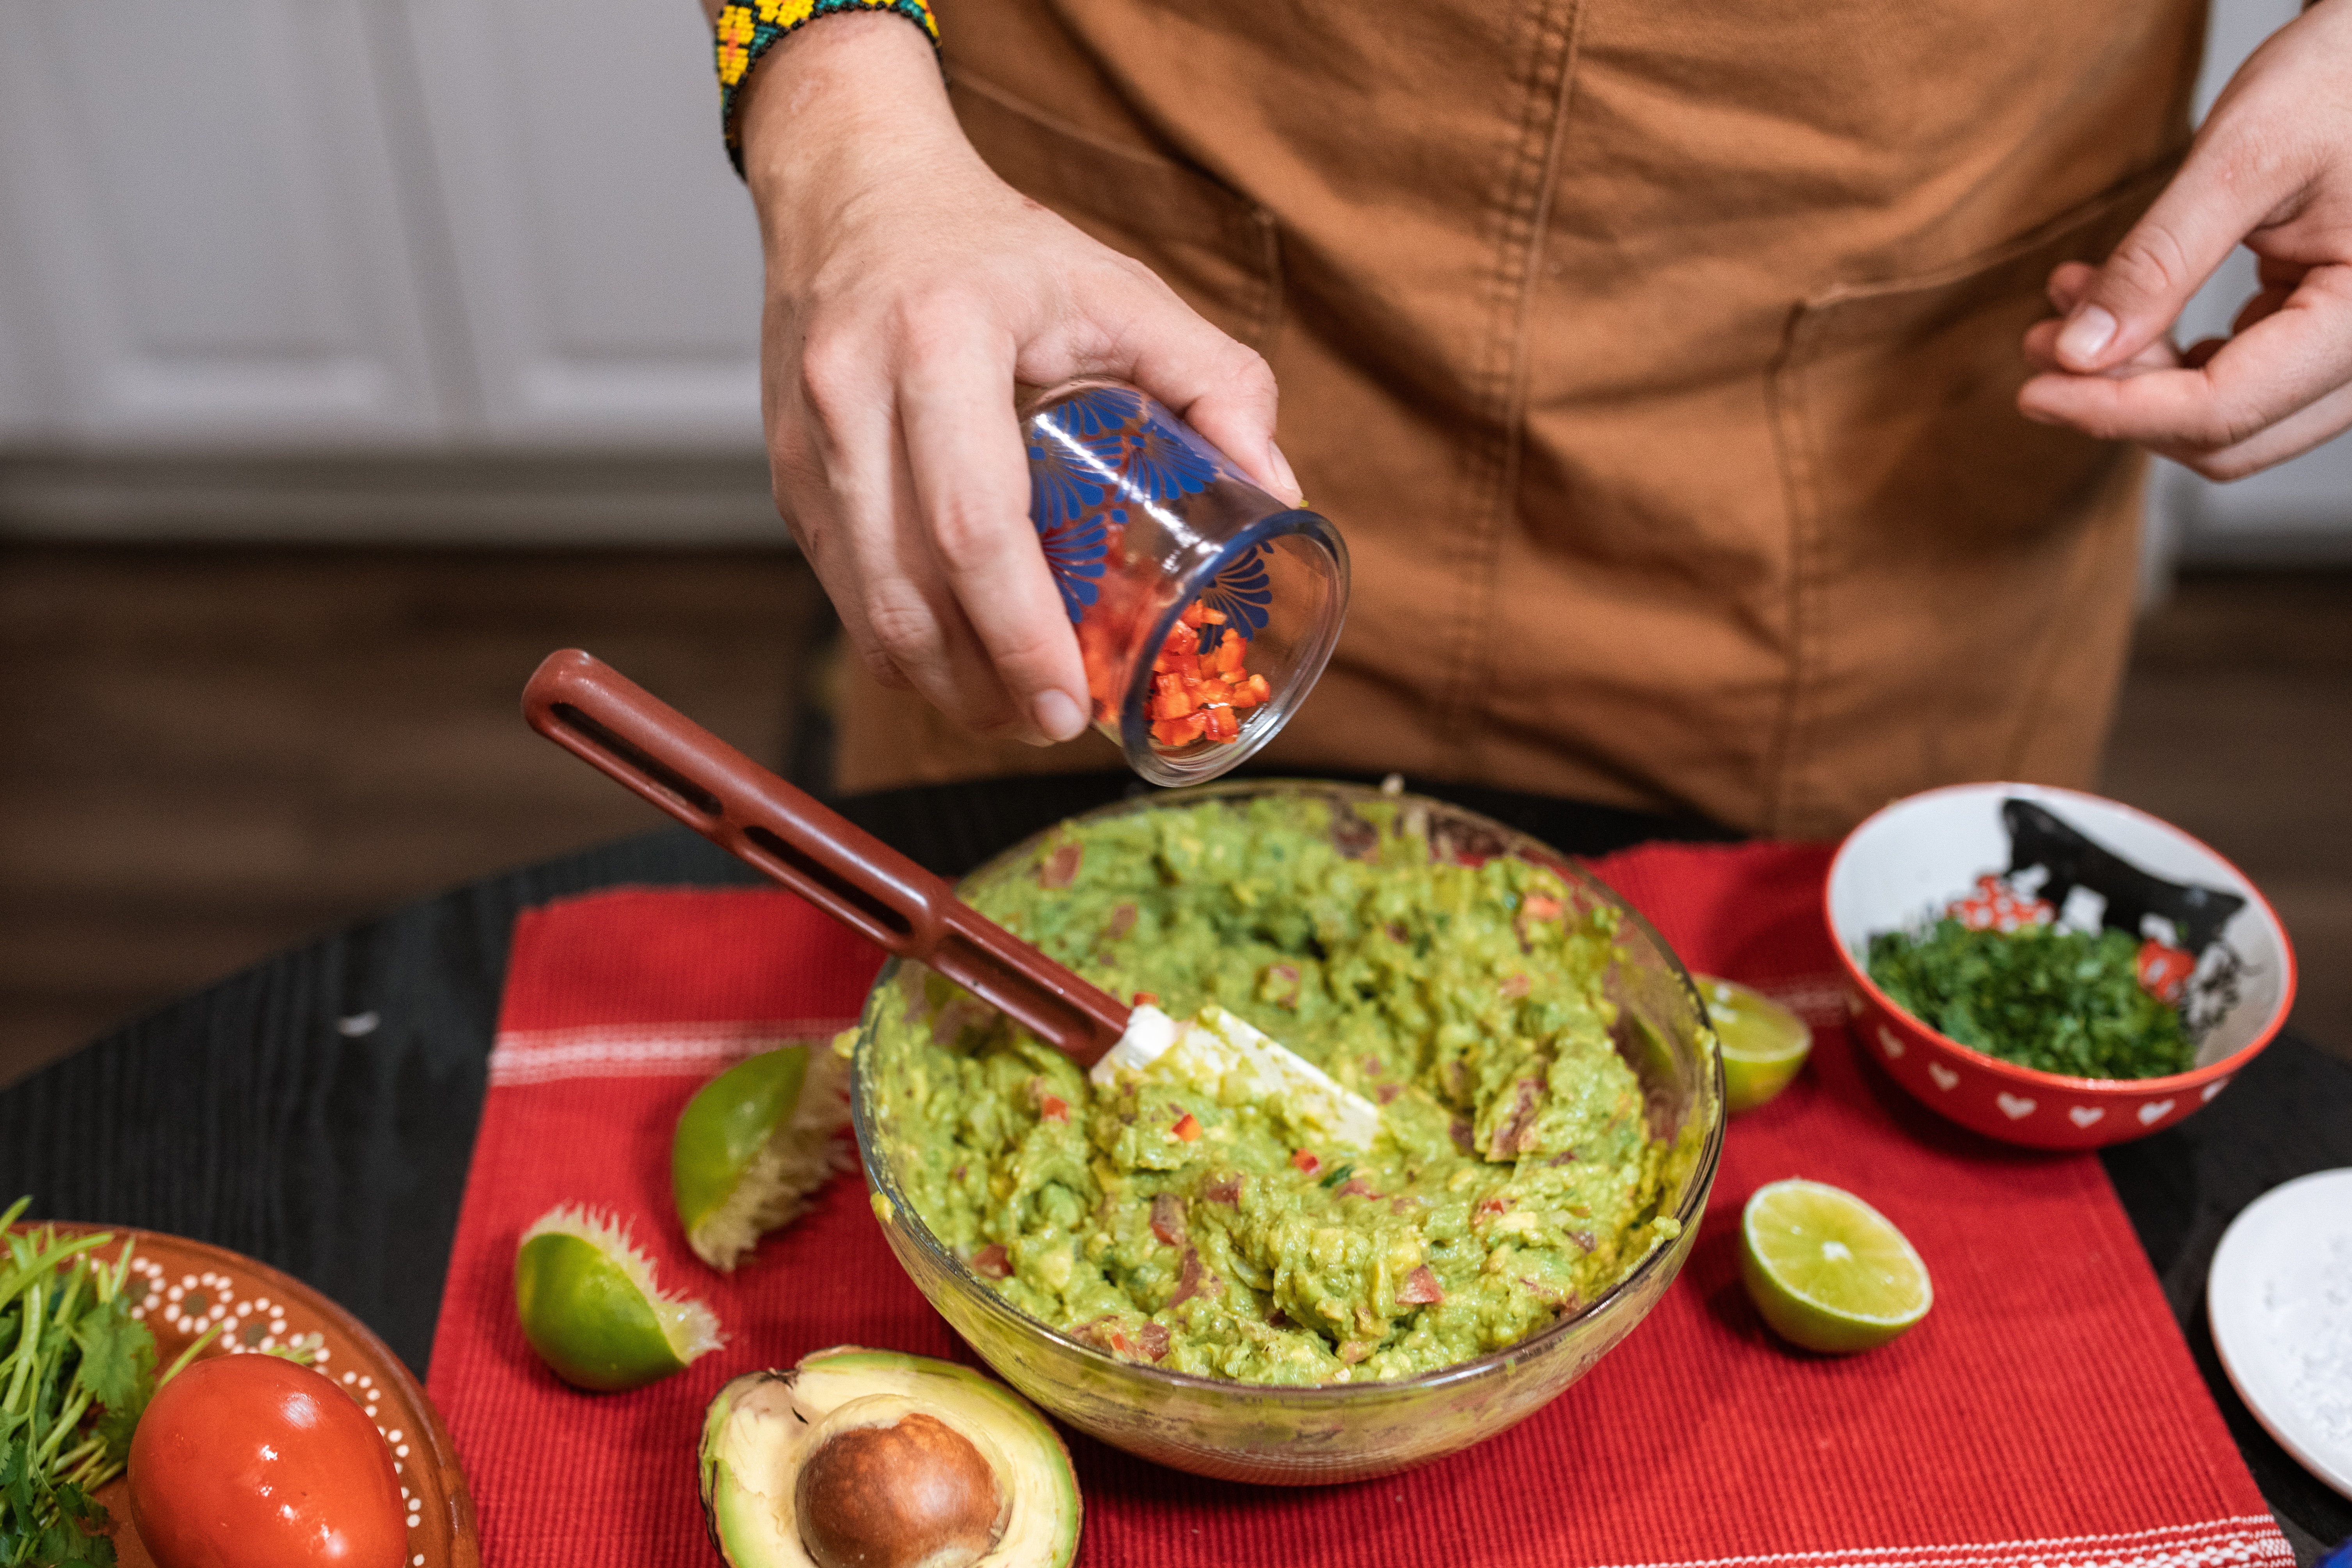 Receta para hacer guacamole mexicano fácil, rápido y que dure más tiempo |  Cocina | La Revista | El Universo